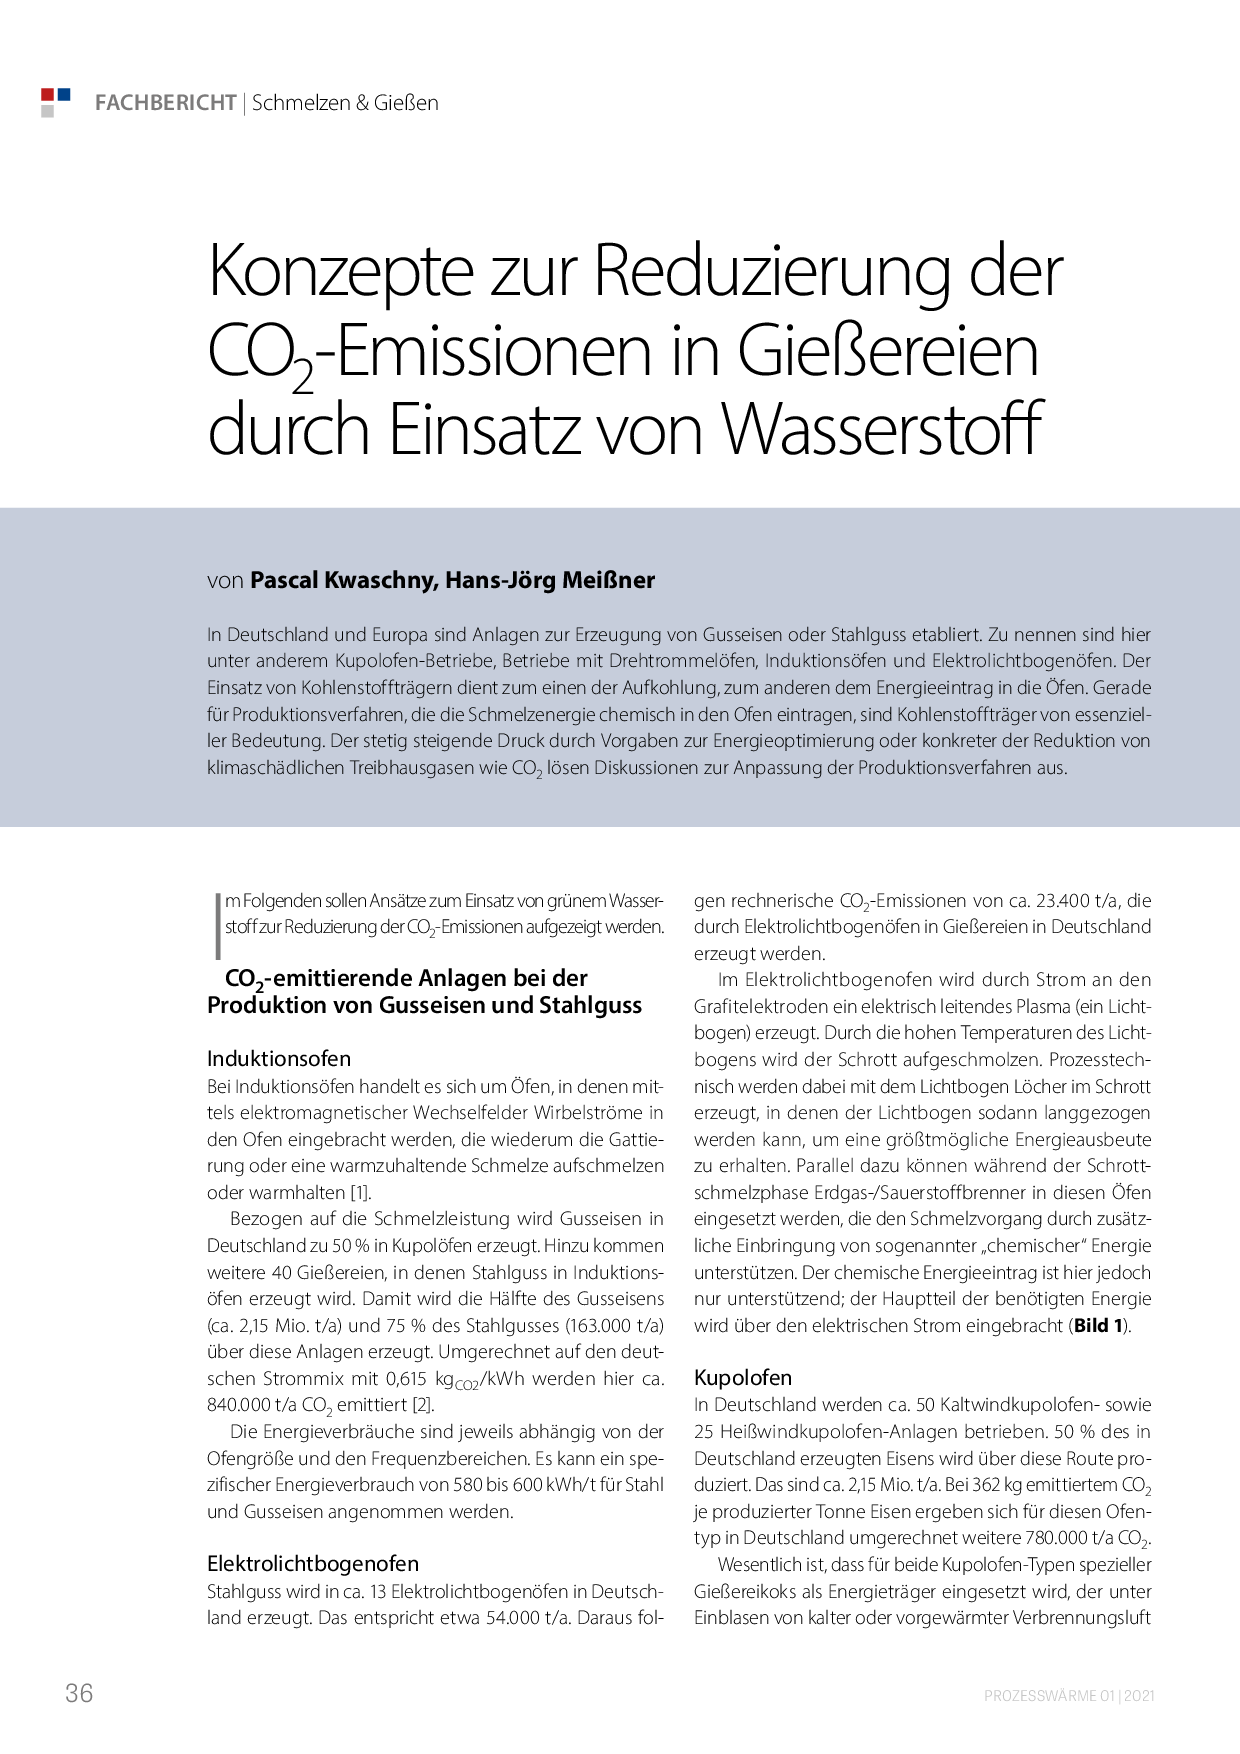 Konzepte zur Reduzierung der CO2-Emissionen in Gießereien durch Einsatz von Wasserstoff